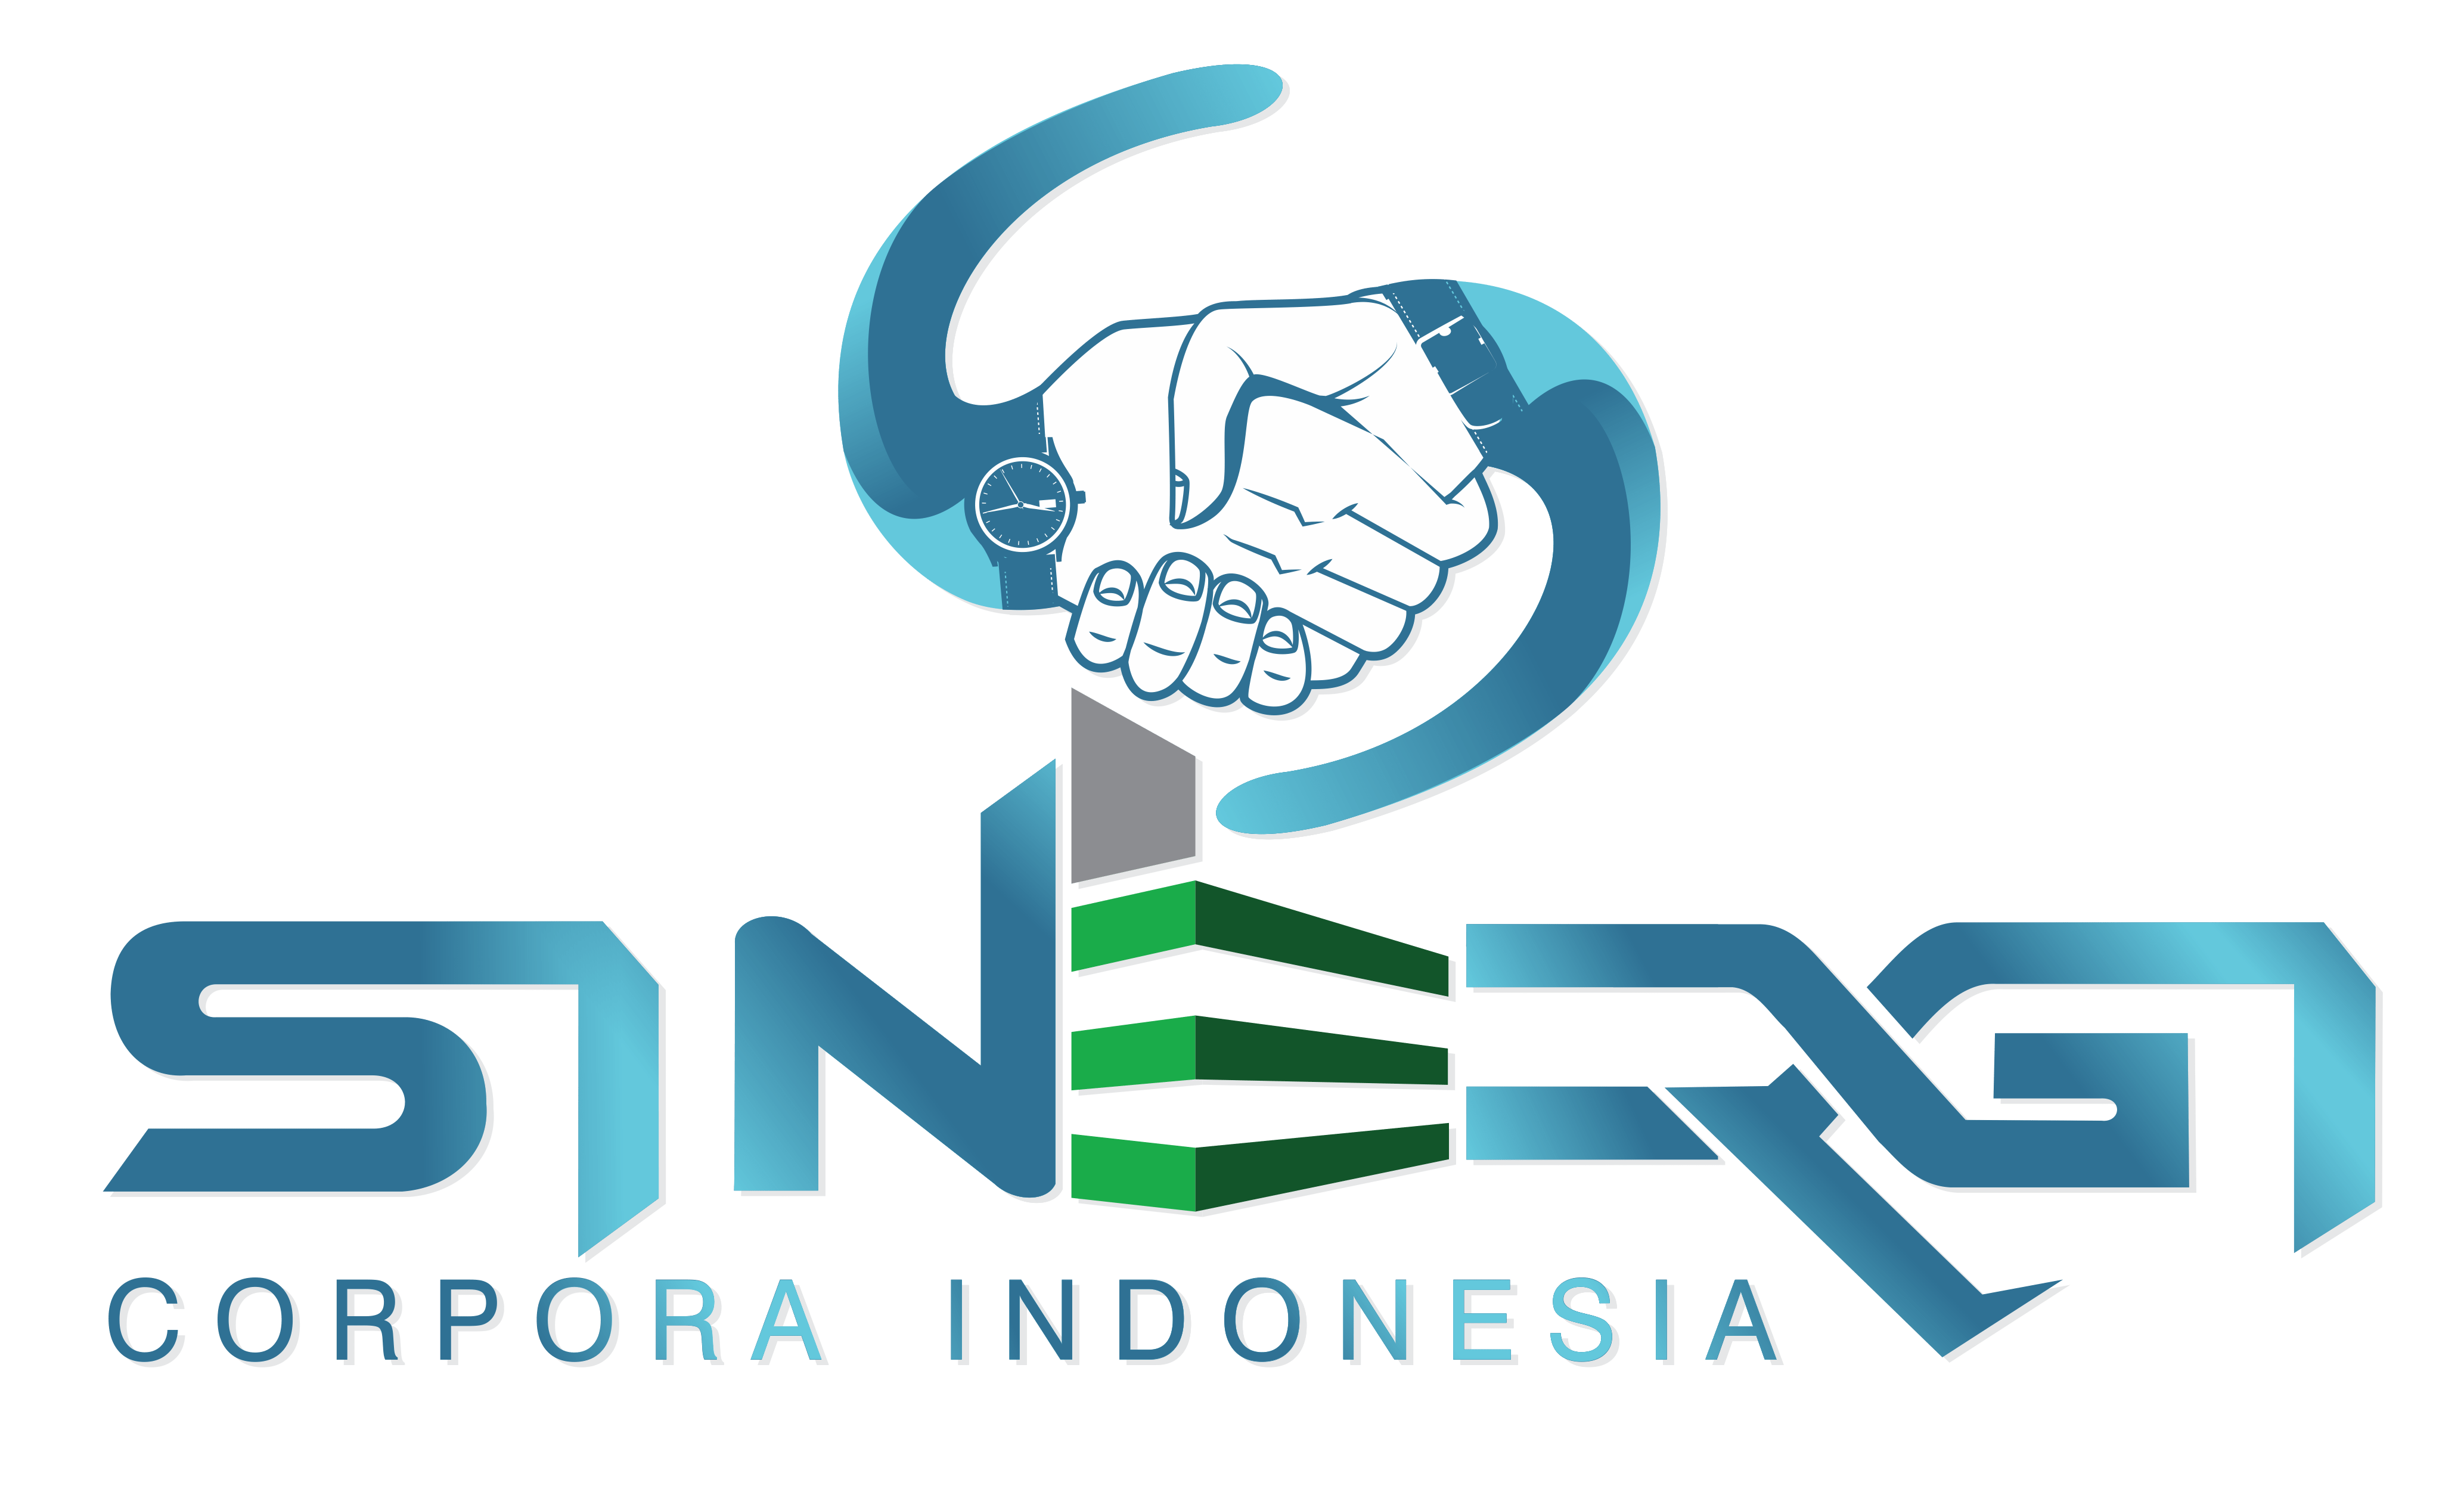 Sinergi Corpora Indonesia